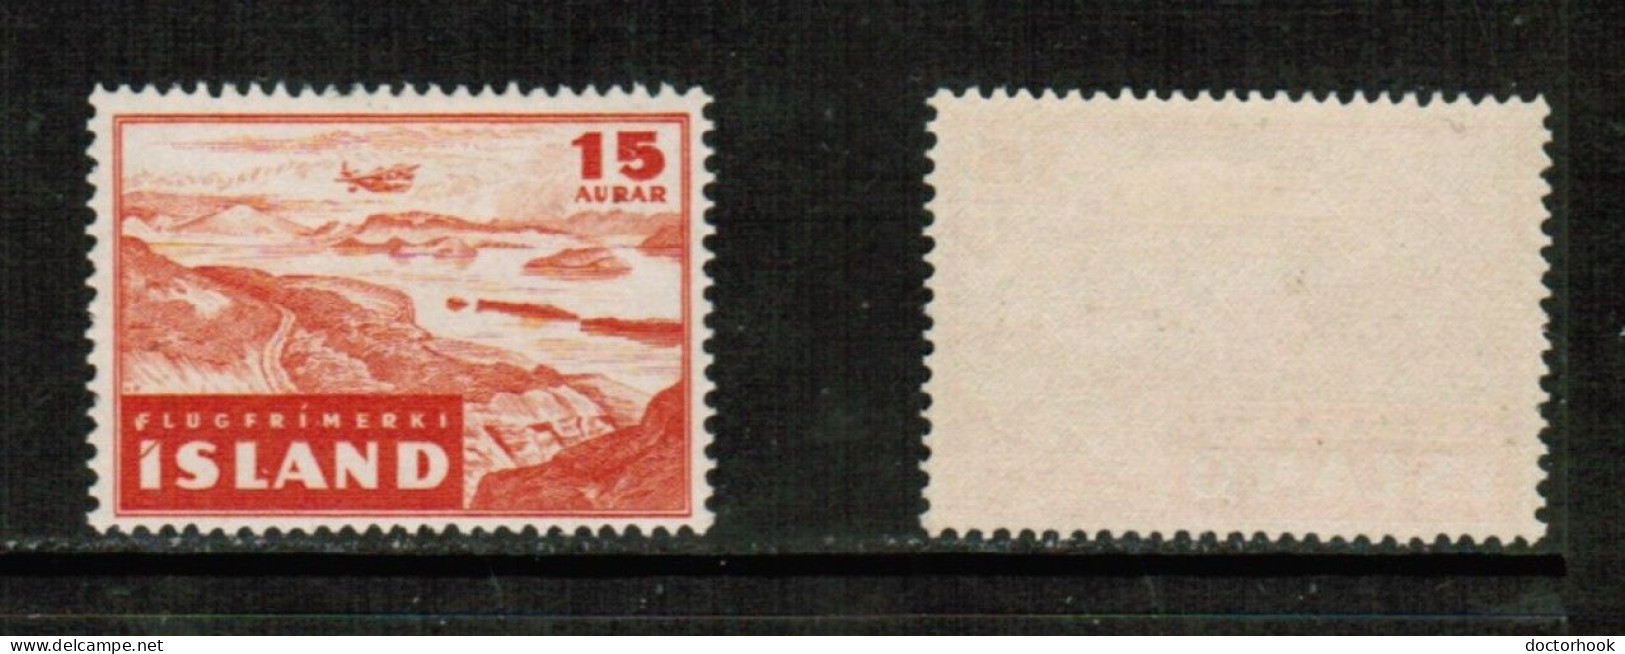 ICELAND   Scott # C 21* MINT LH (CONDITION AS PER SCAN) (Stamp Scan # 950-18) - Luchtpost